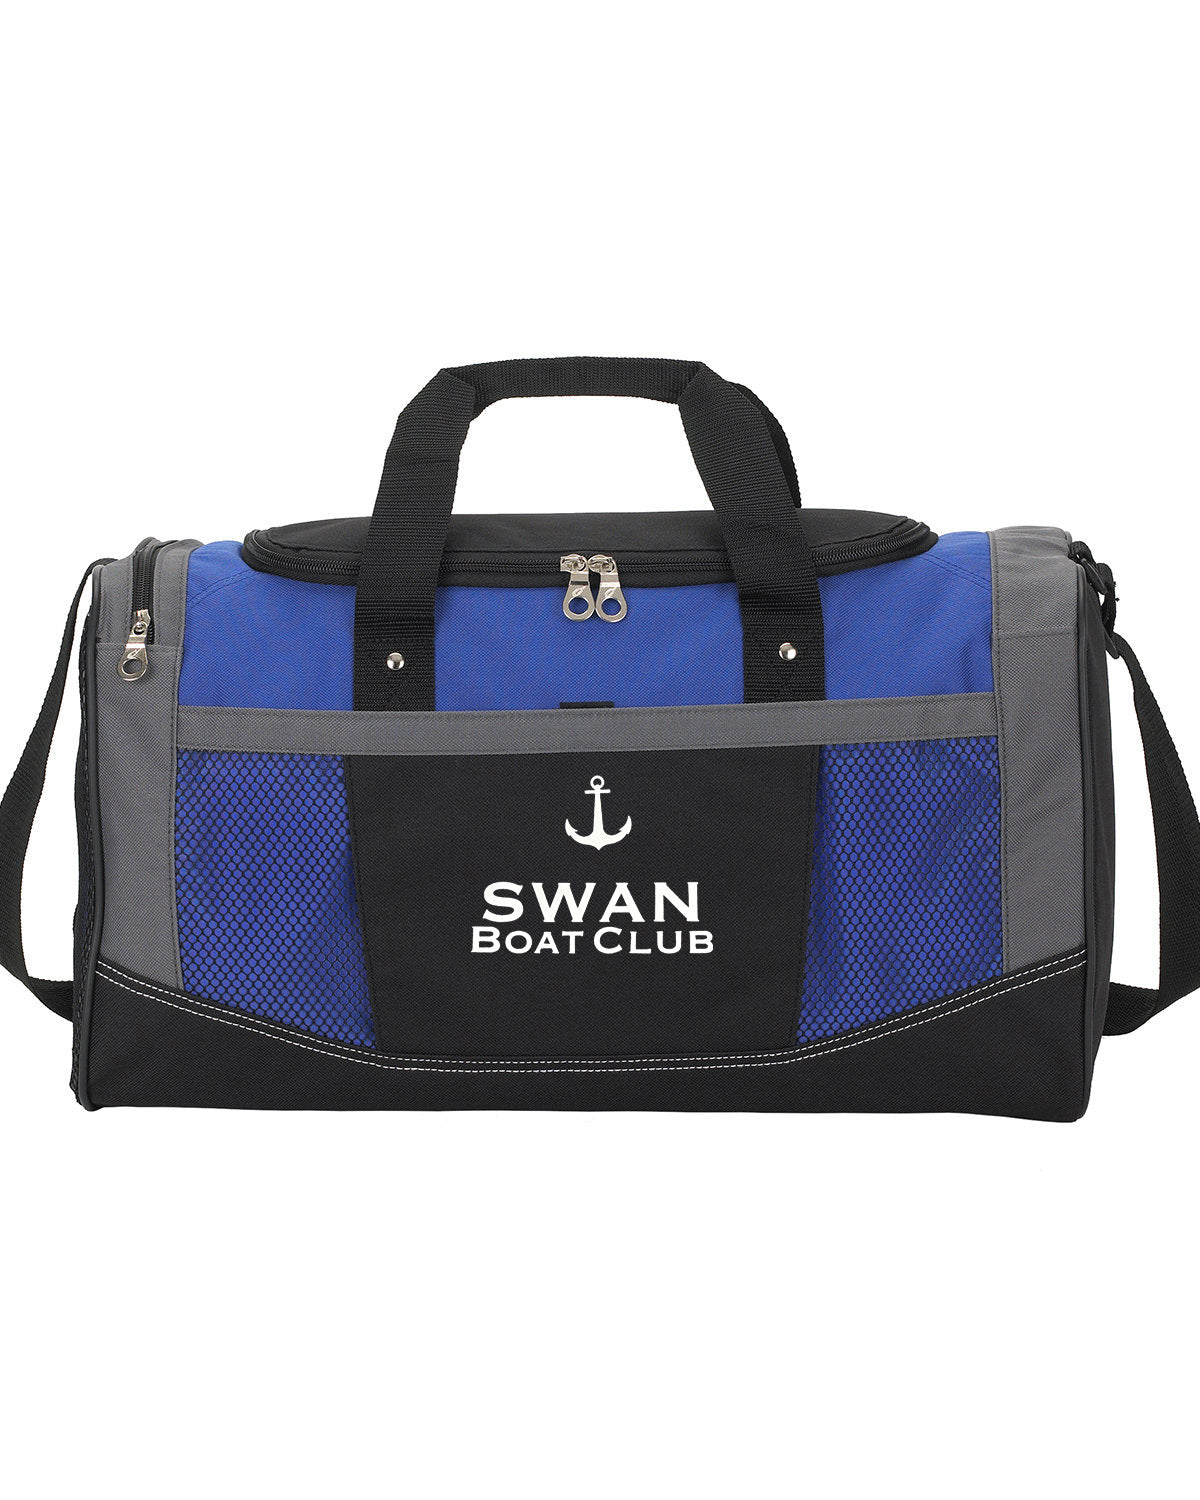 Swan Boat Club Large duffle bag